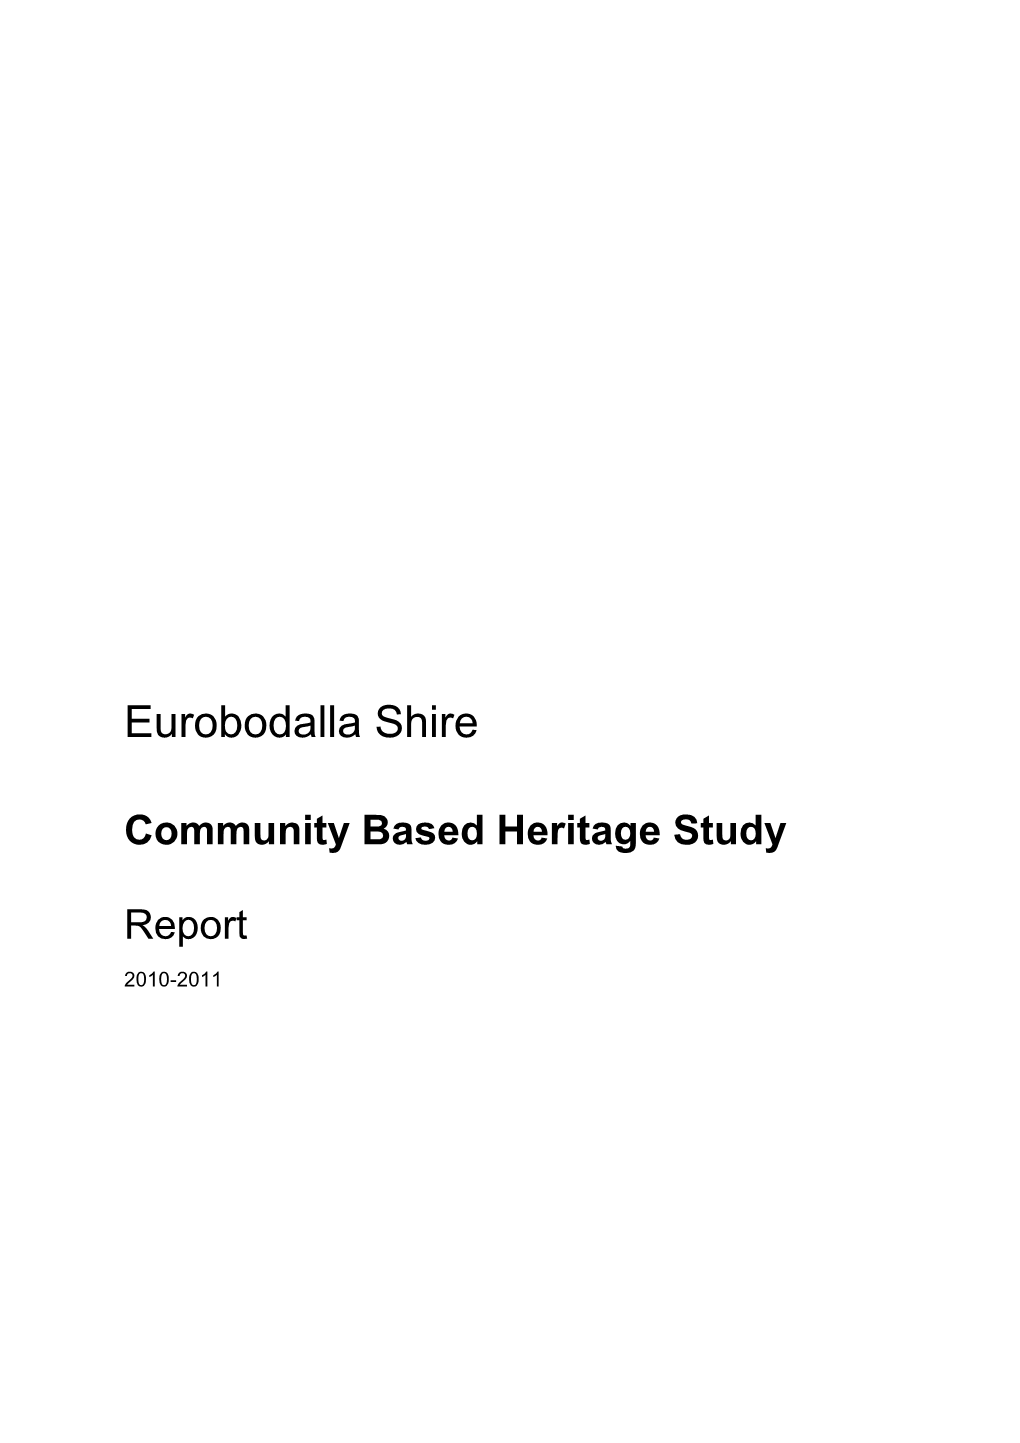 Eurobodalla Shire Council